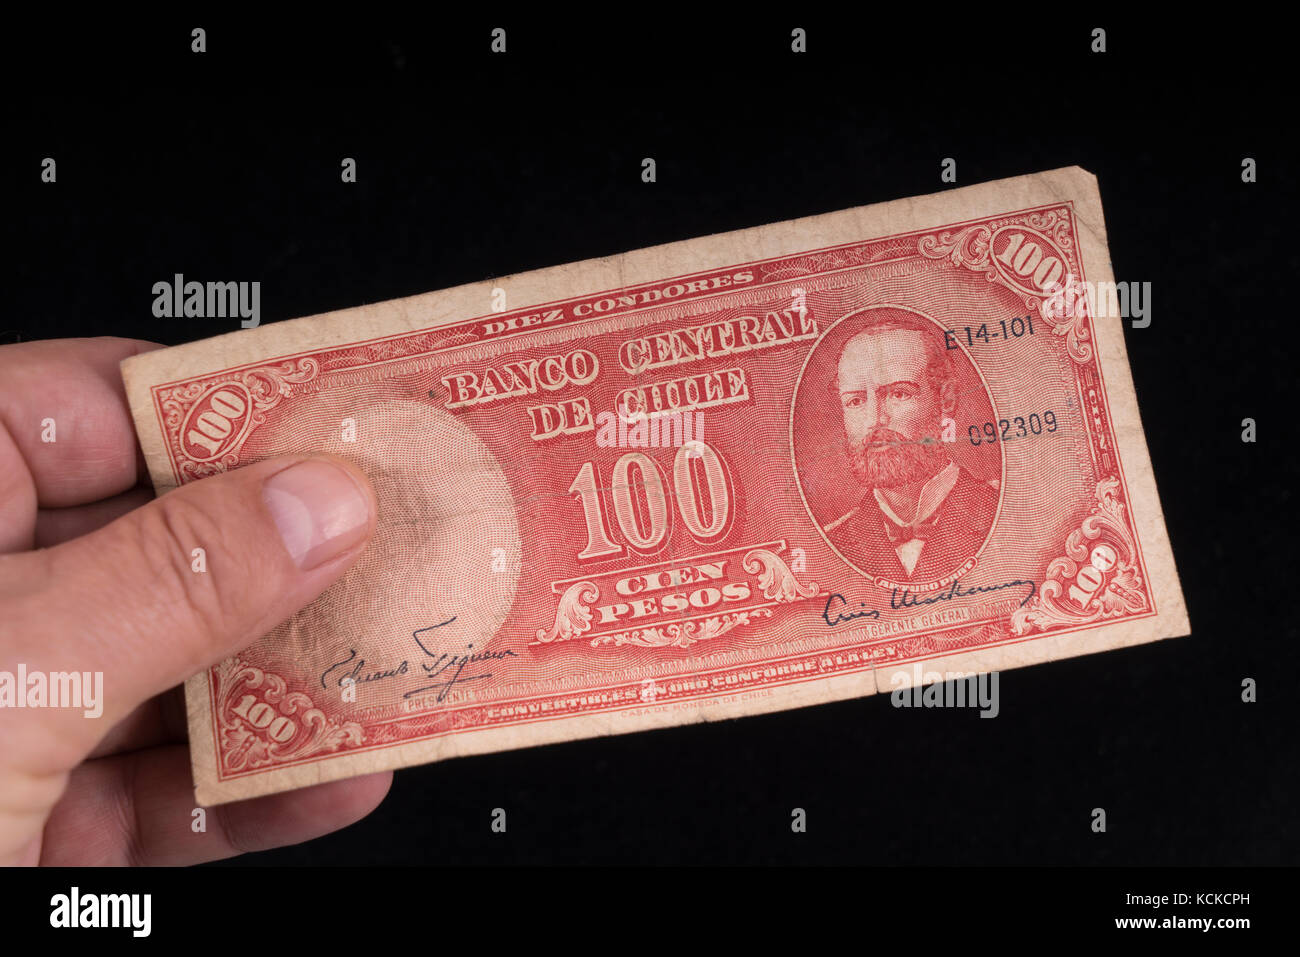 Un vieux billet chilien à portée de main Banque D'Images